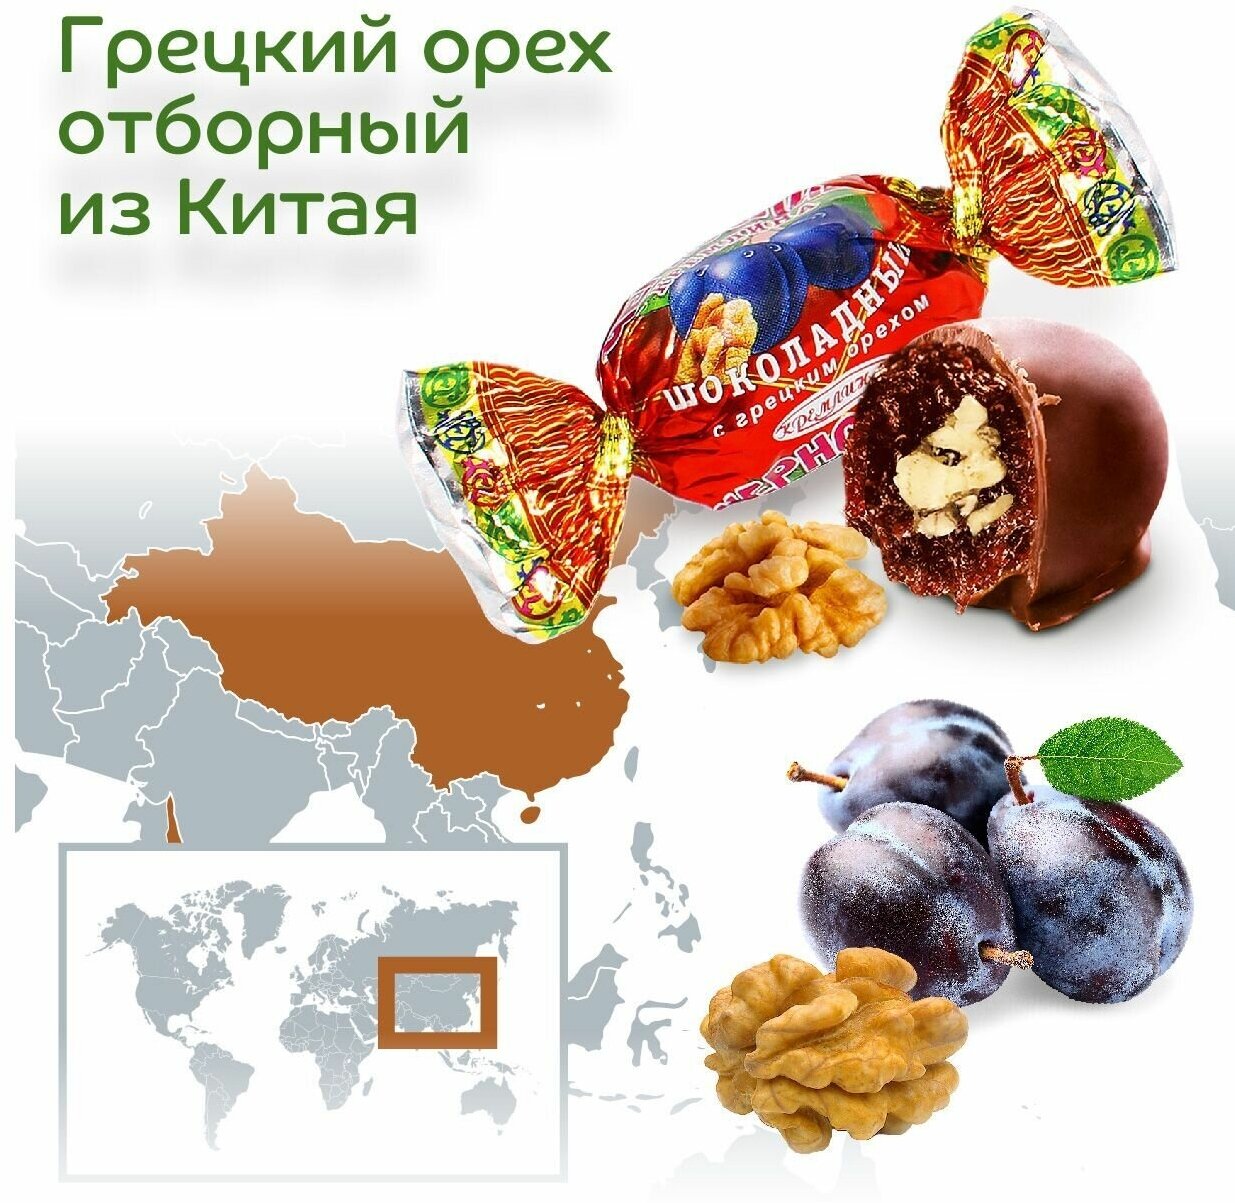 Шоколадные конфеты из сухофруктов Микс: Чернослив с грецким орехом, Курага с грецким орехом, Инжир и Финик, короб - телевизор 2 кг